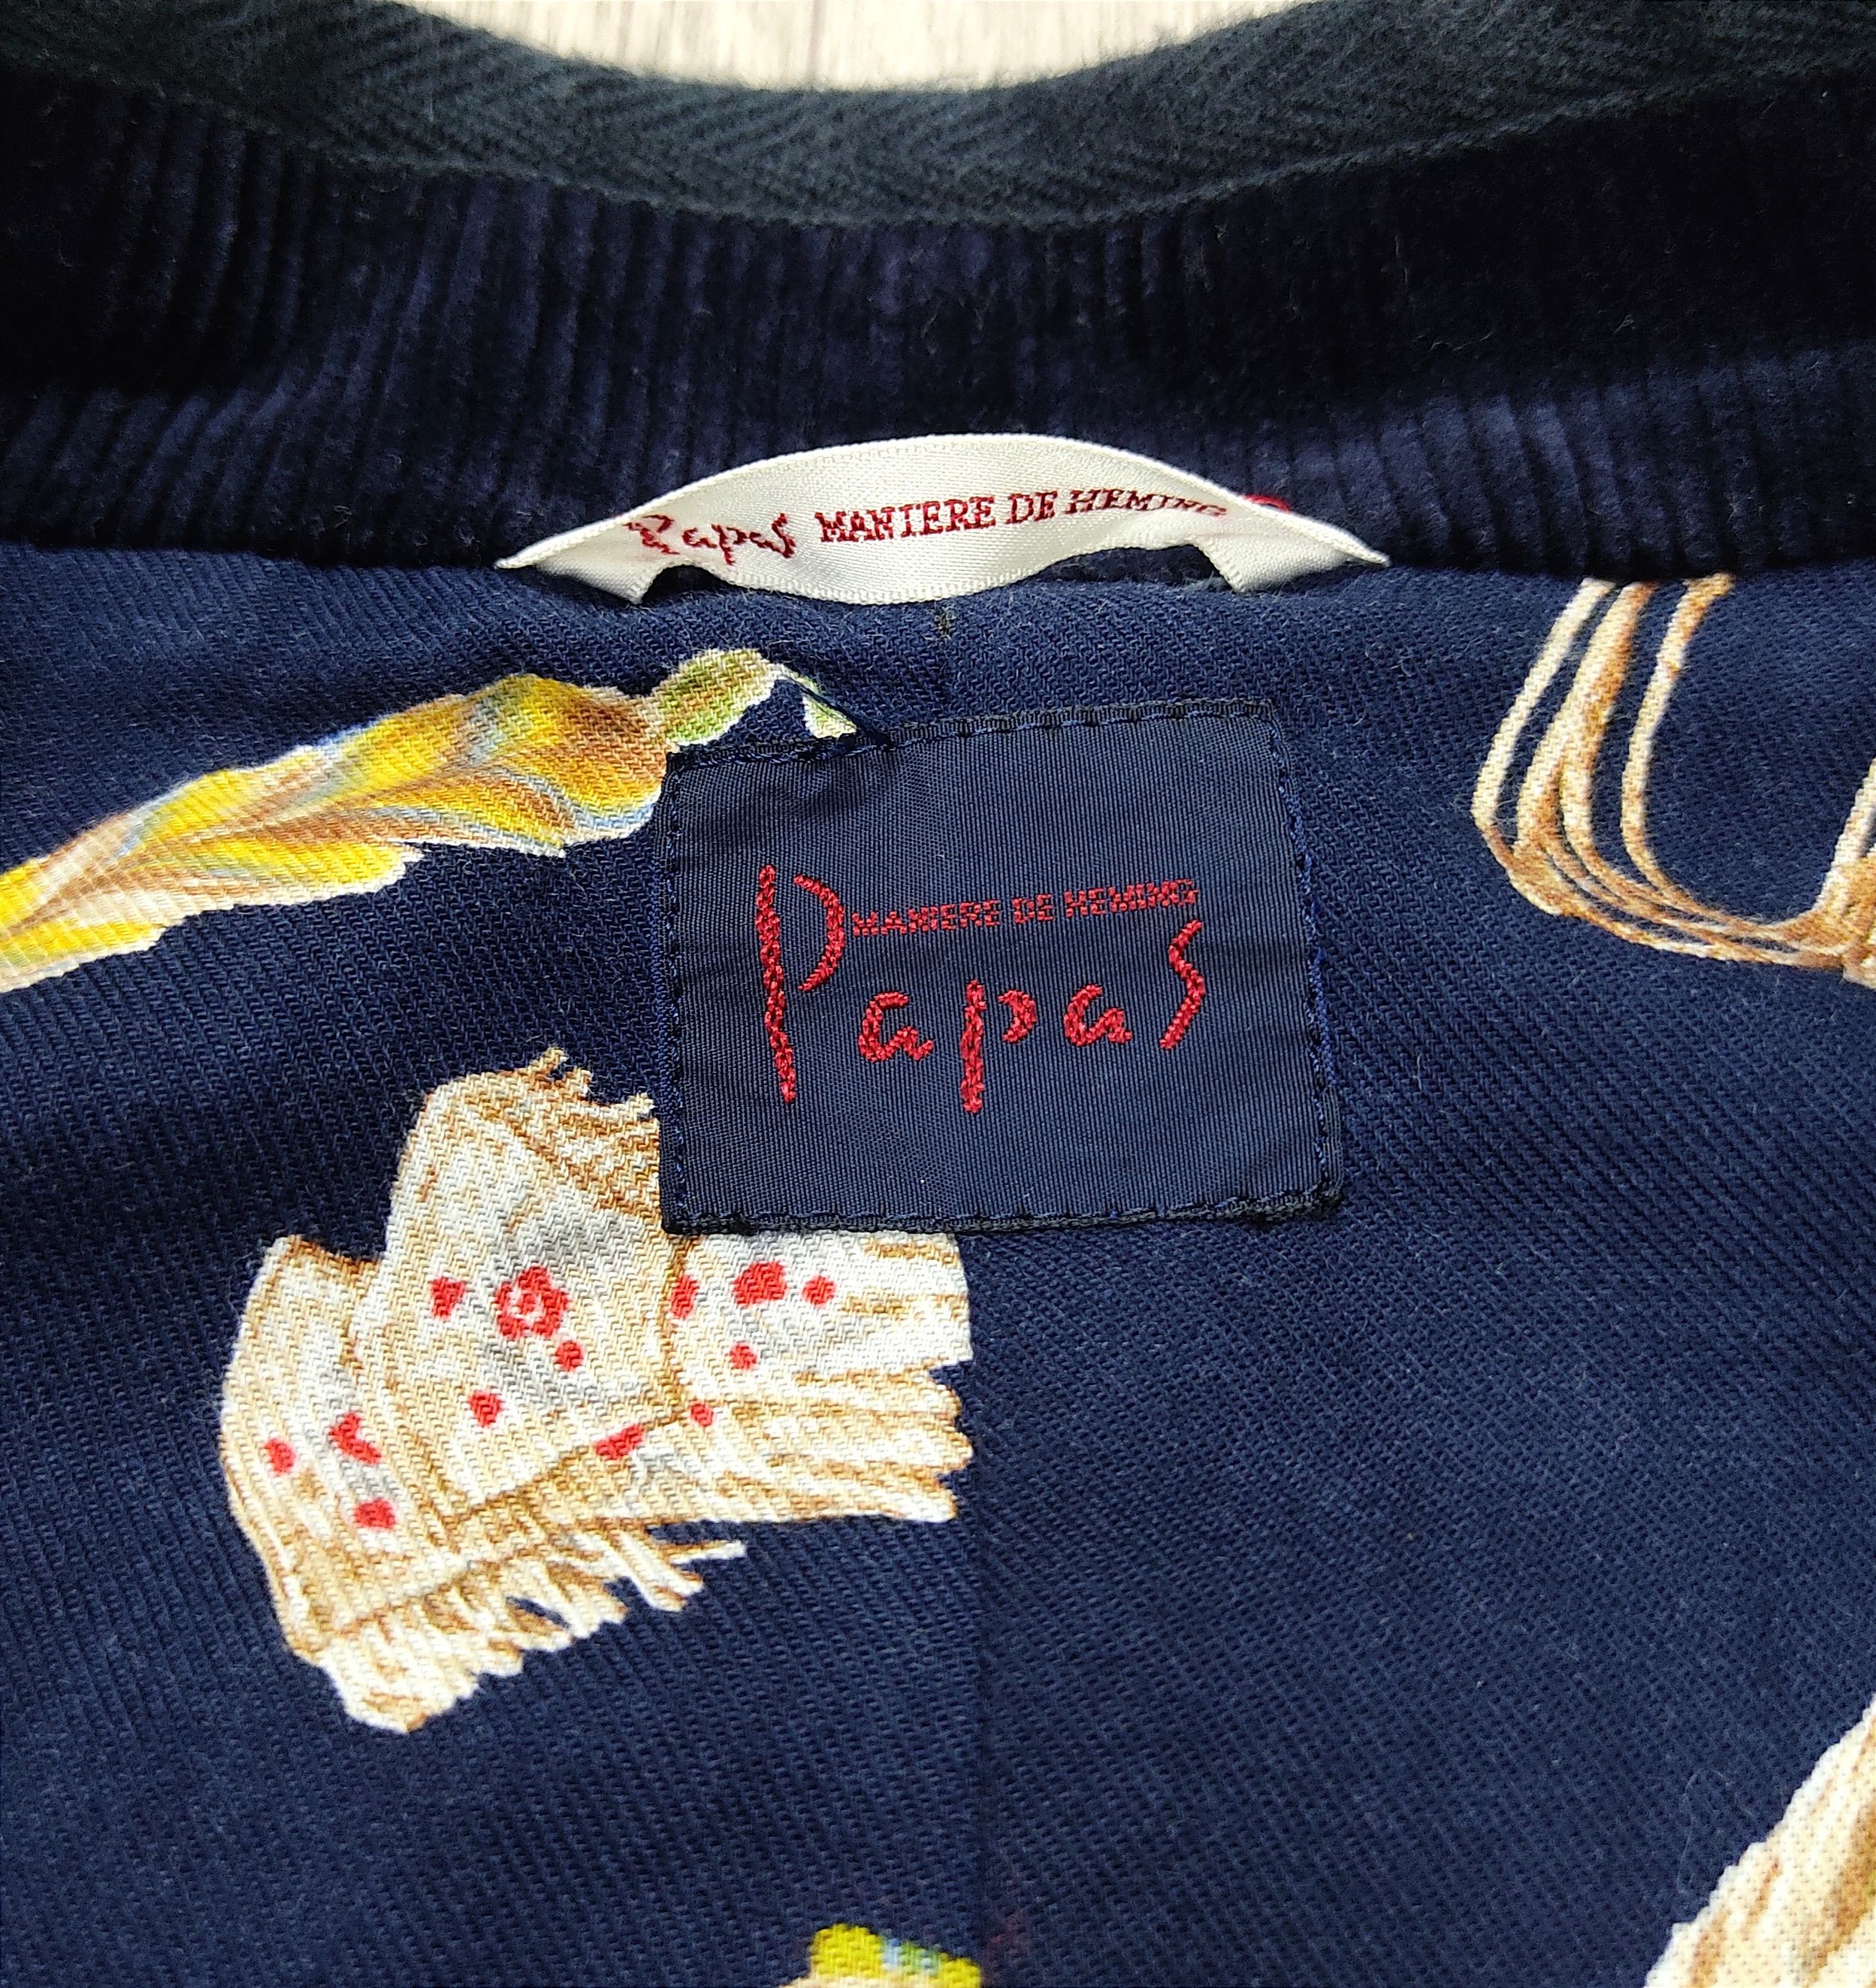 Archival Clothing - The PAPAS Mantere De Heming Navy Blue Deck Jacket - 8